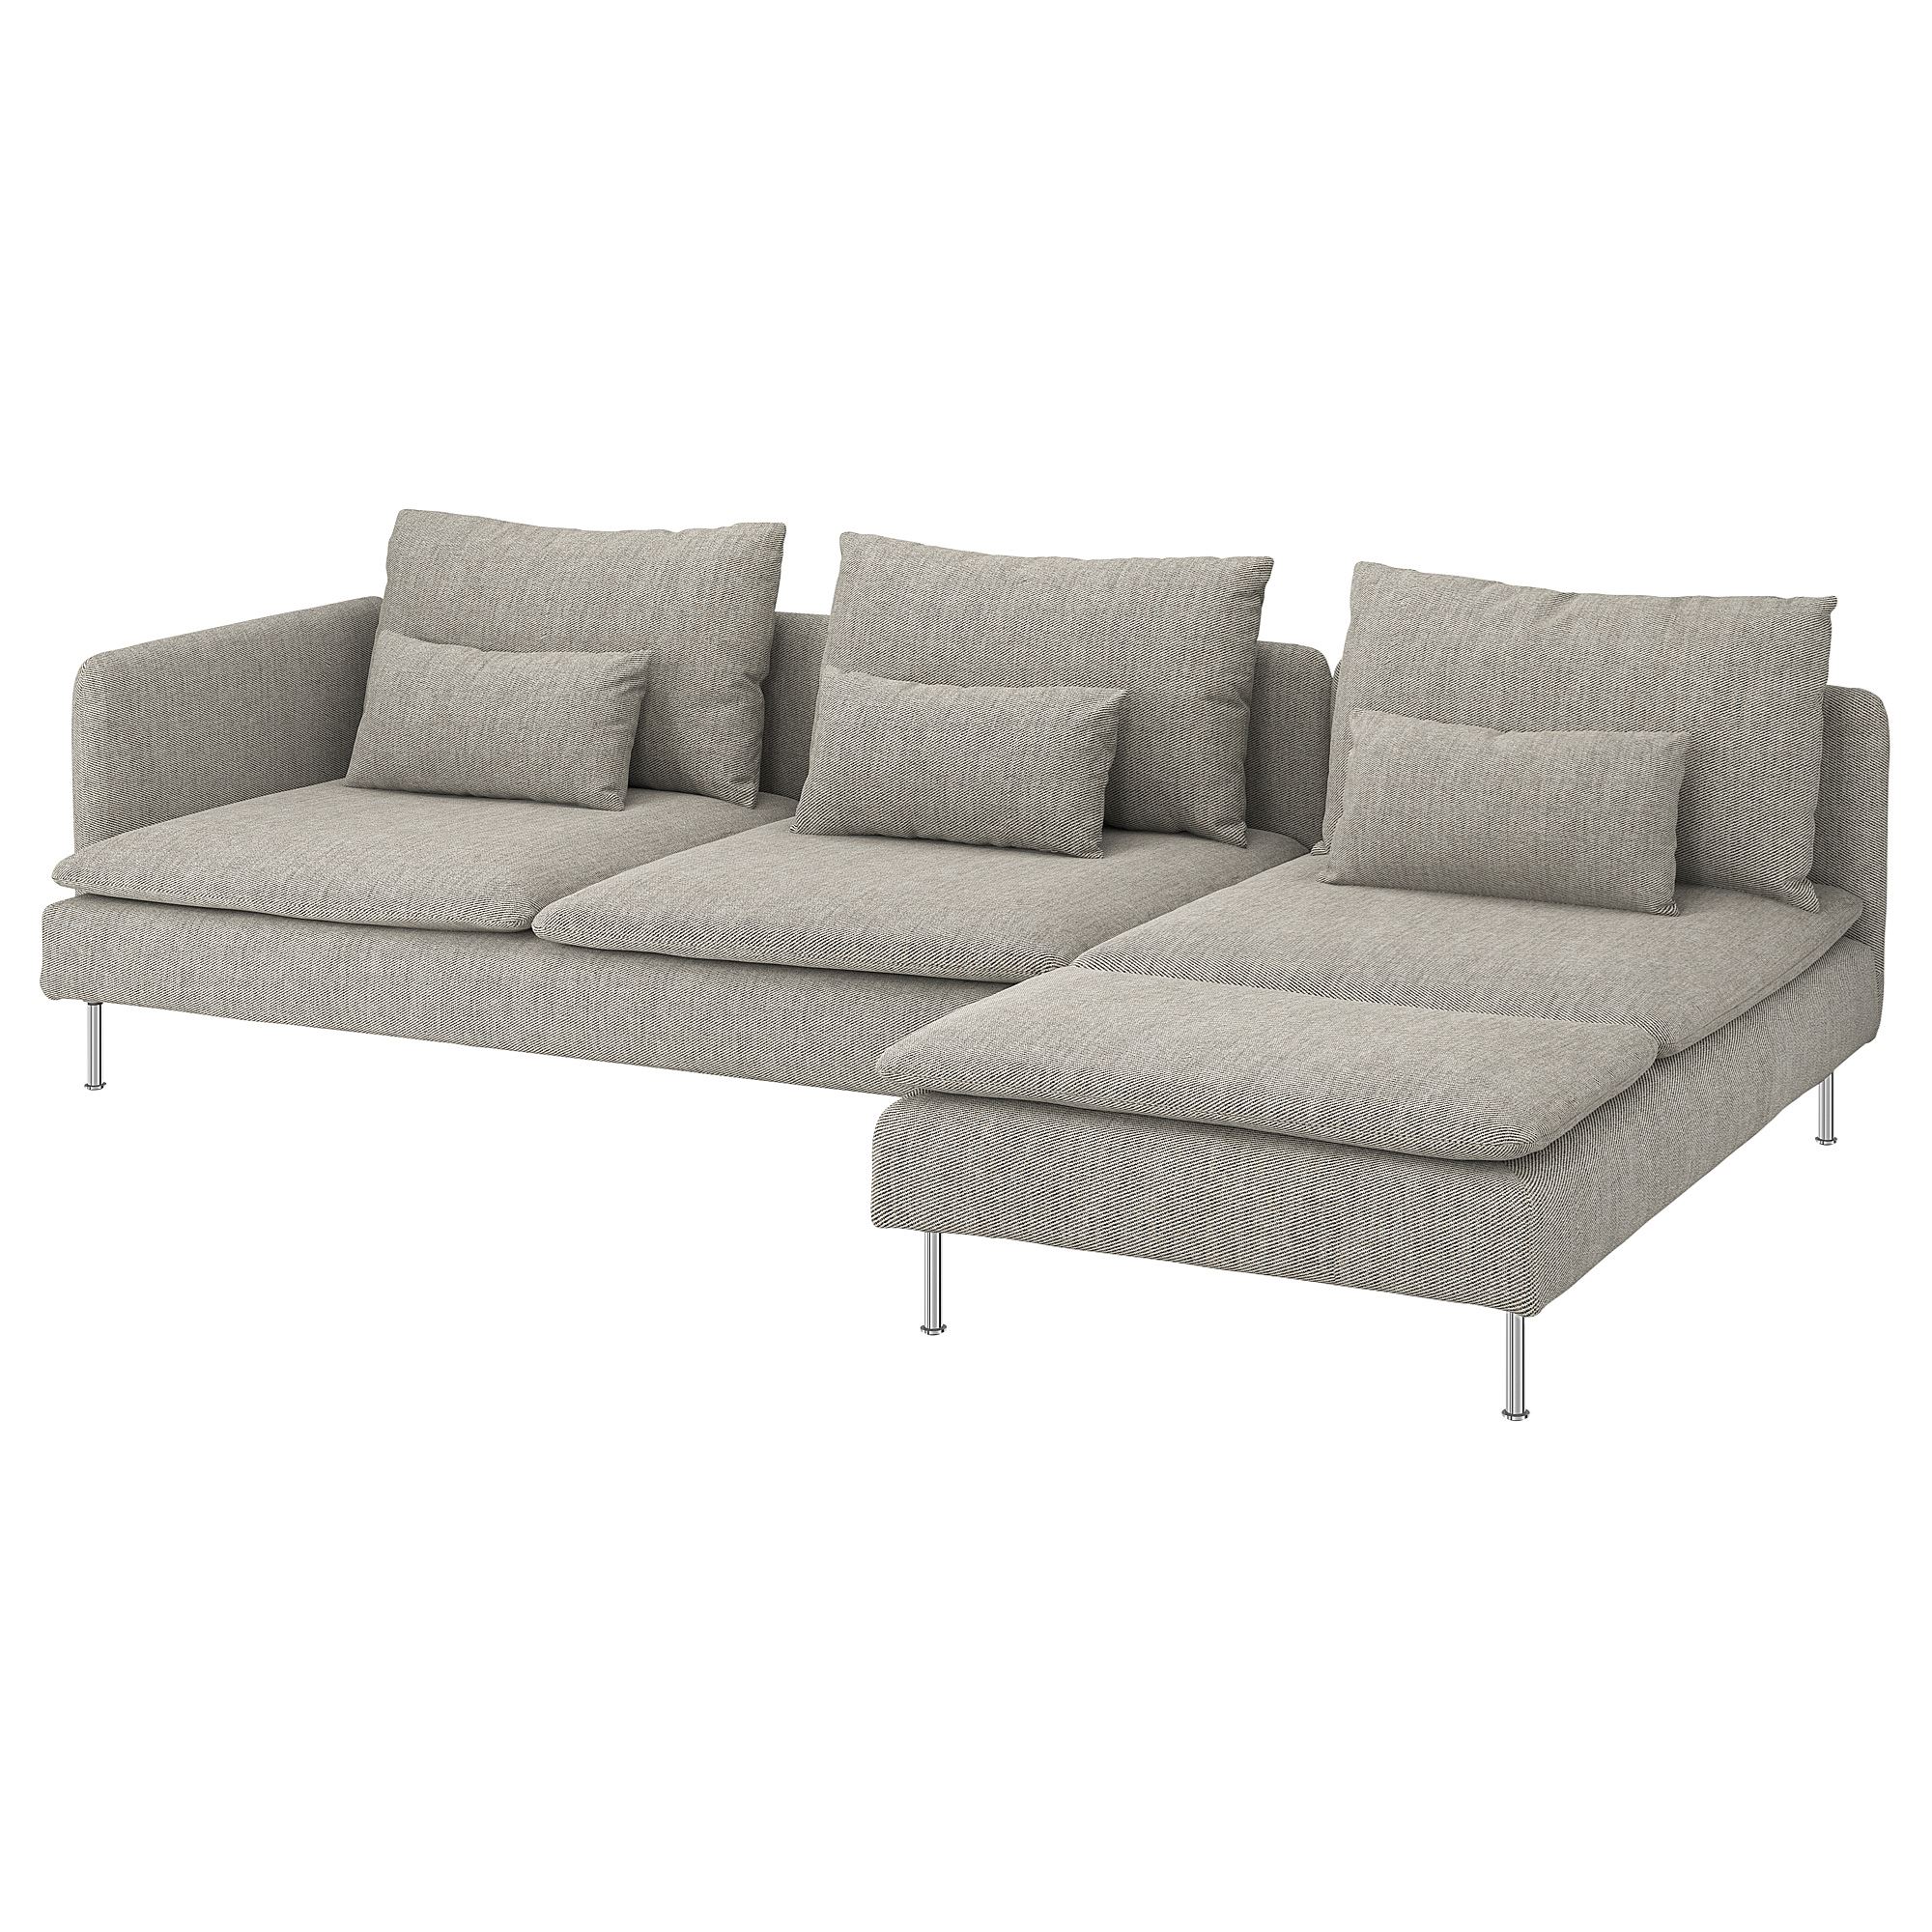 SÖDERHAMN viarp bej-kahverengi 3lü kanepe ve uzanma koltuğu | IKEA